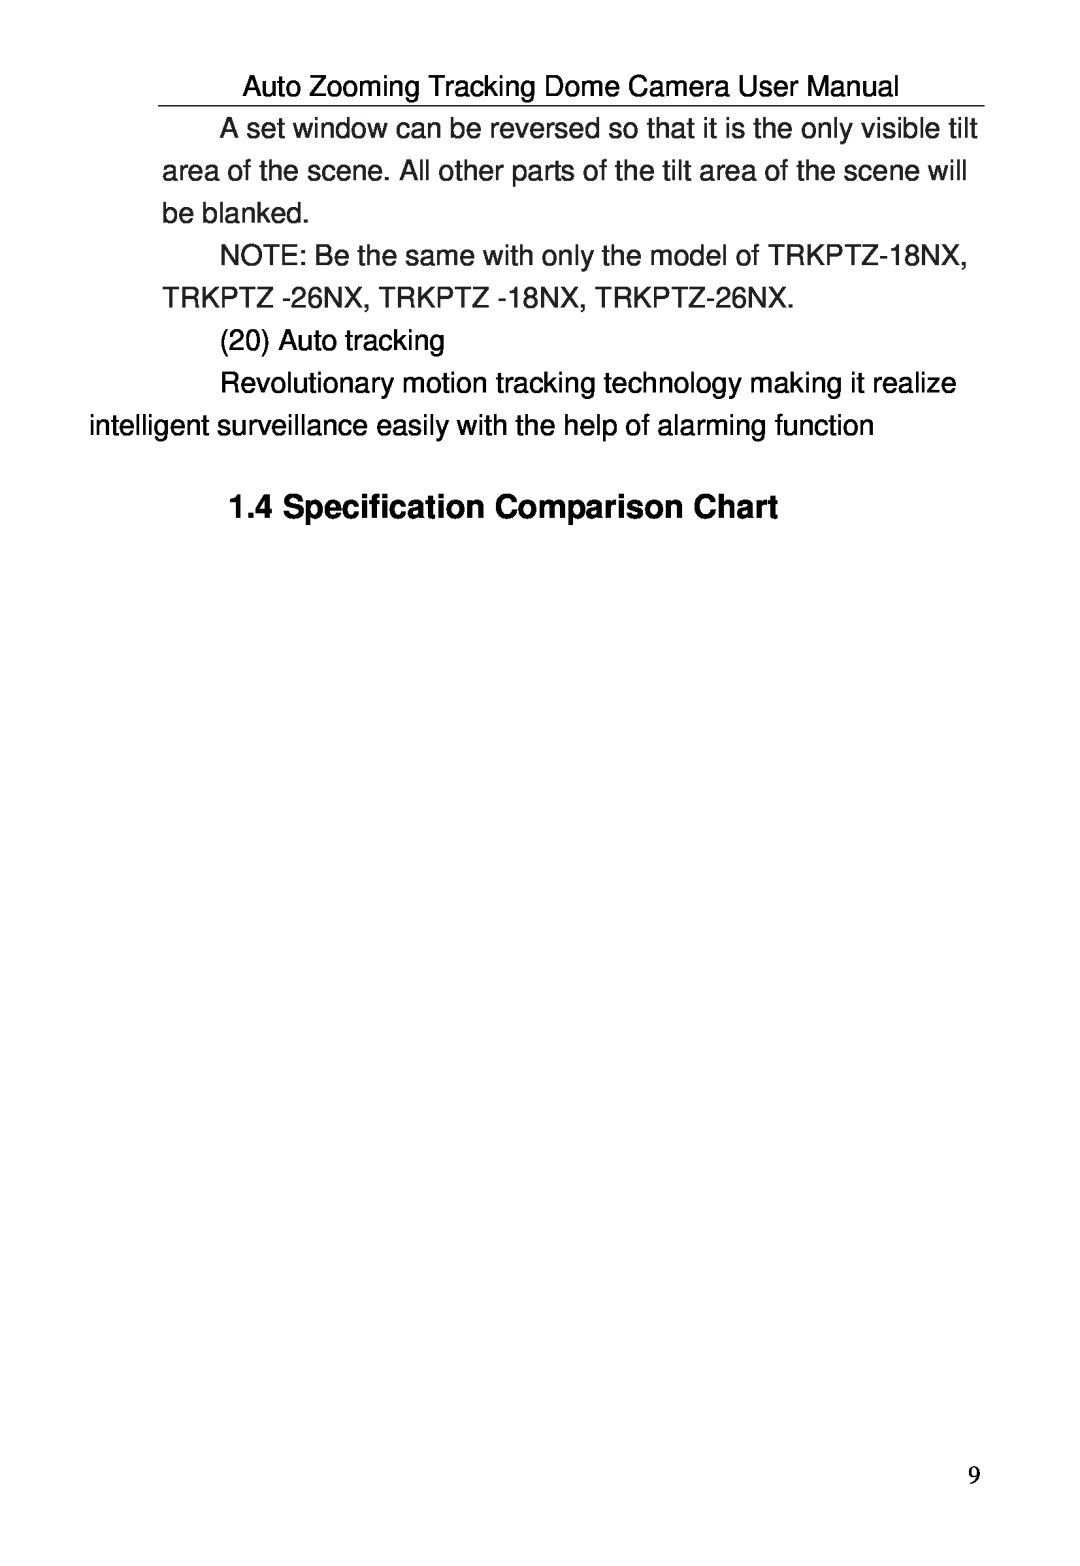 Optiview TRKPTZ-18NX, TRKPTZ -26NX user manual Specification Comparison Chart 